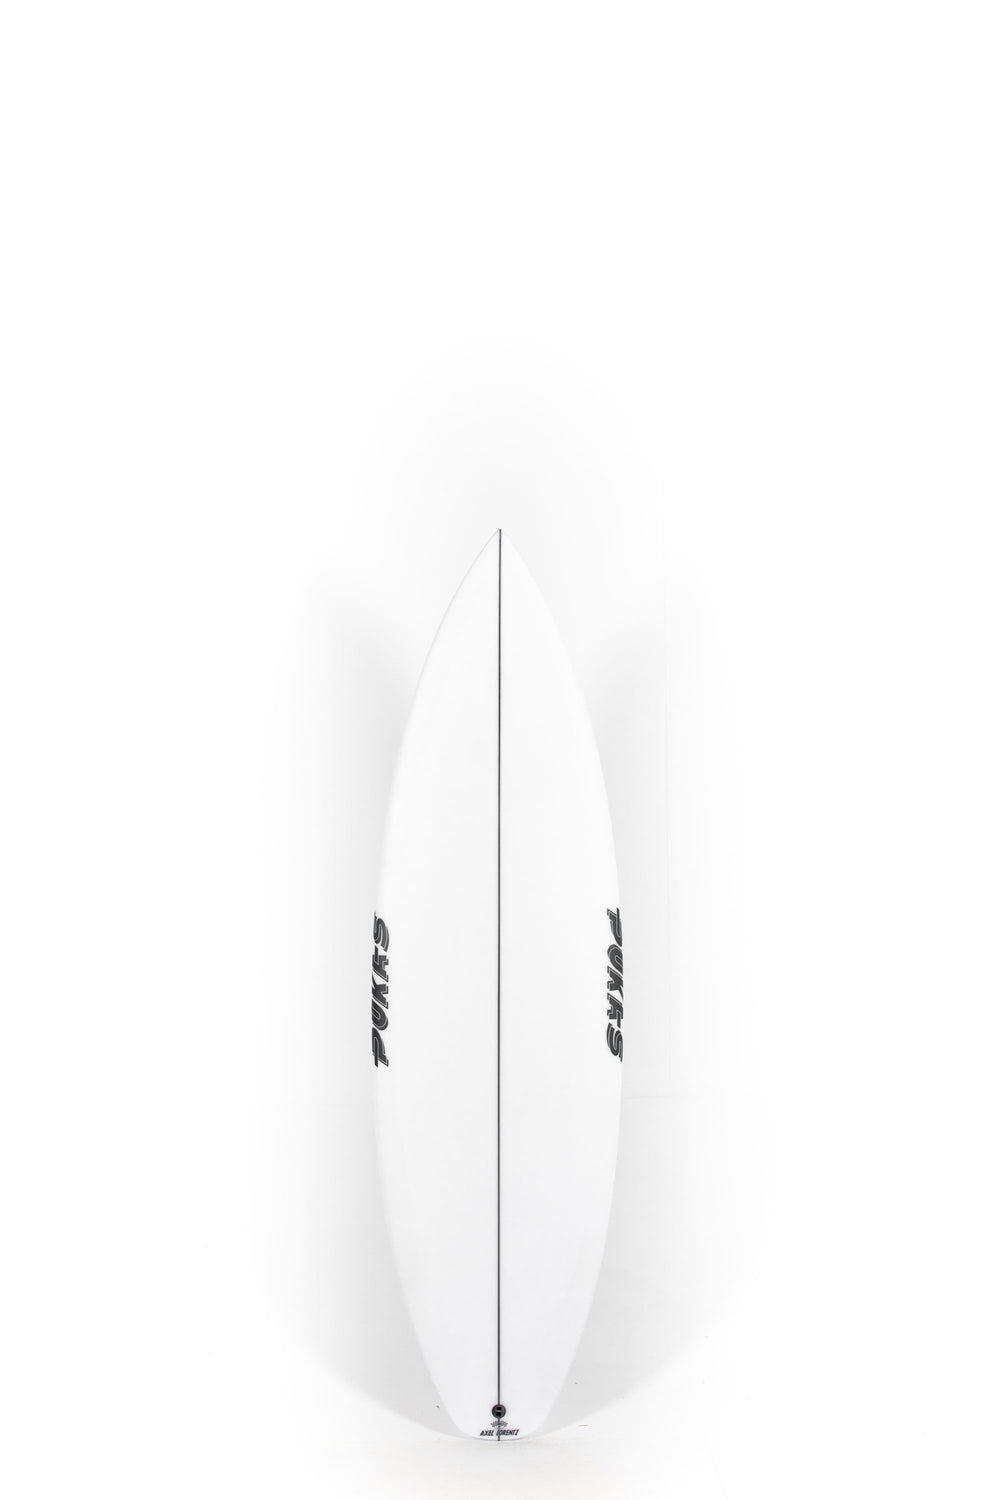 Pukas Surf Shop - Pukas Surfboard - DARKER by Axel Lorentz - 5'8